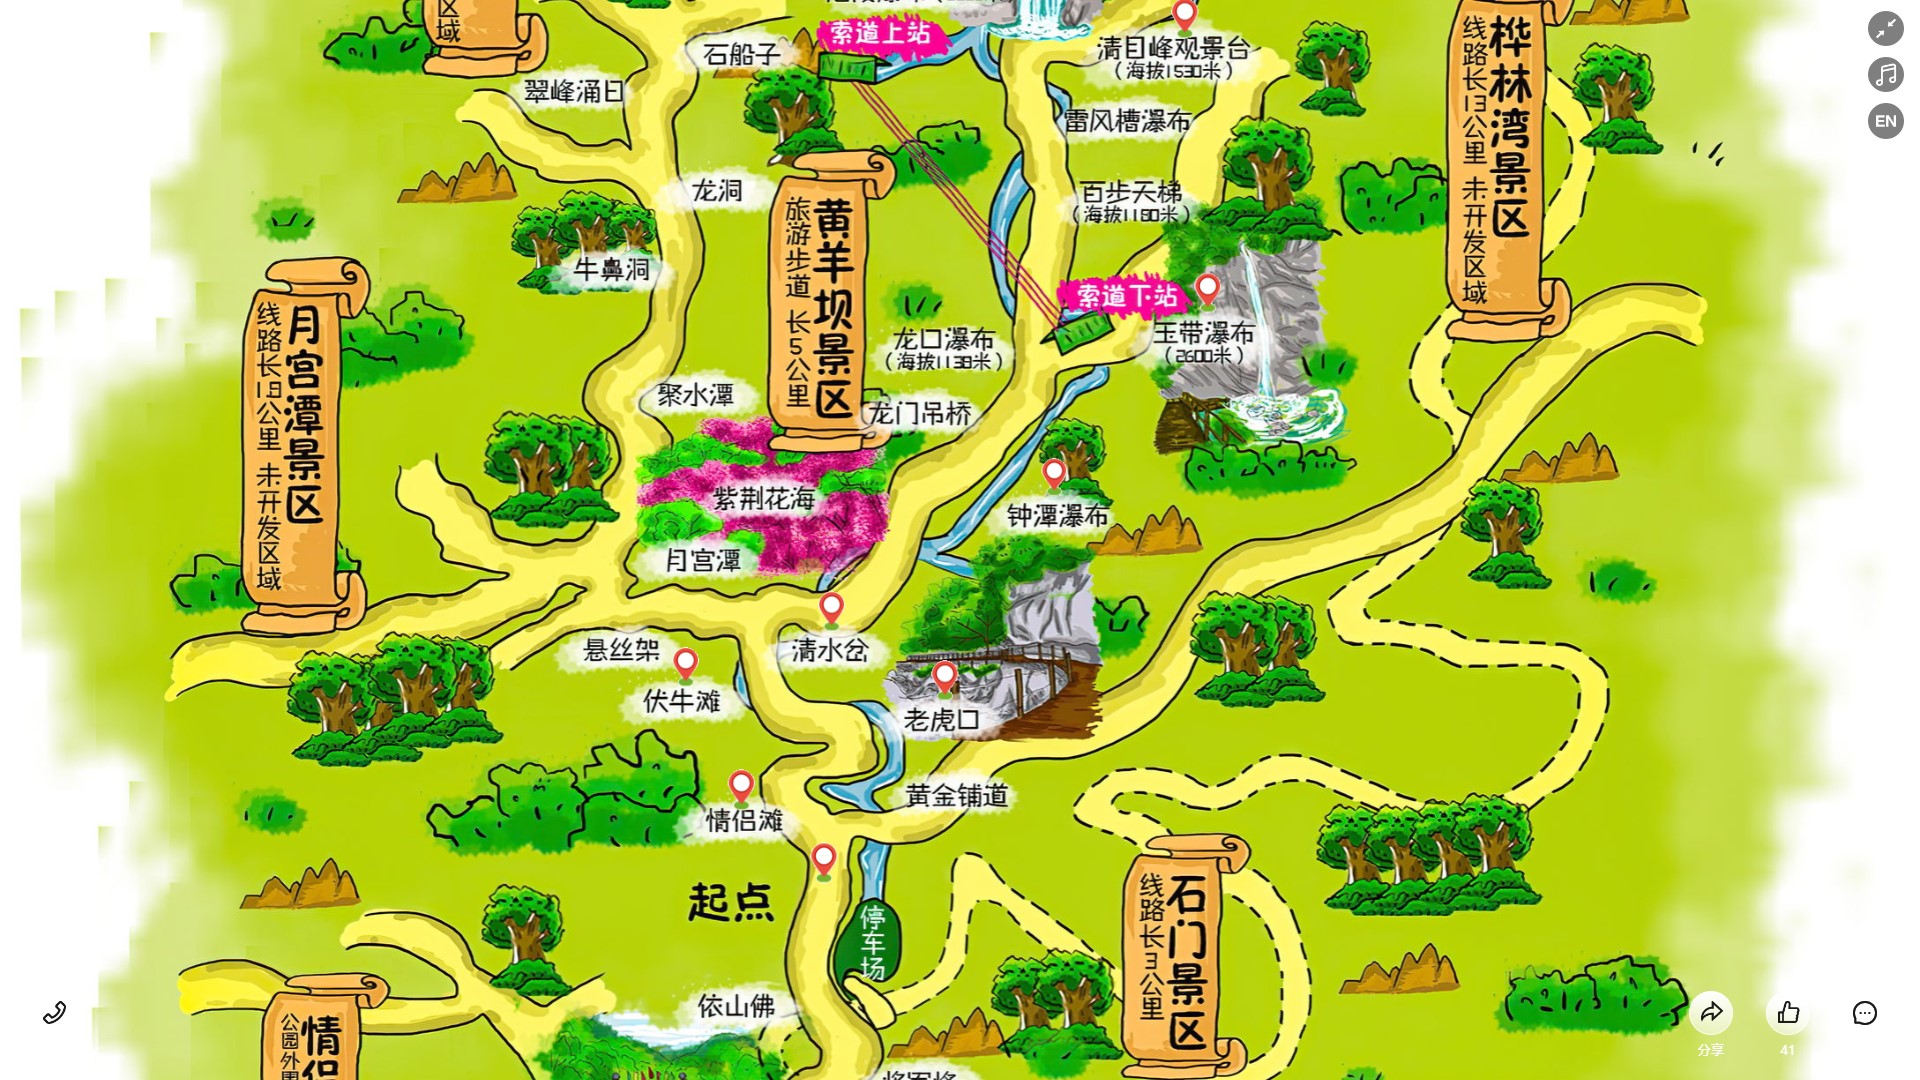 扬州景区导览系统